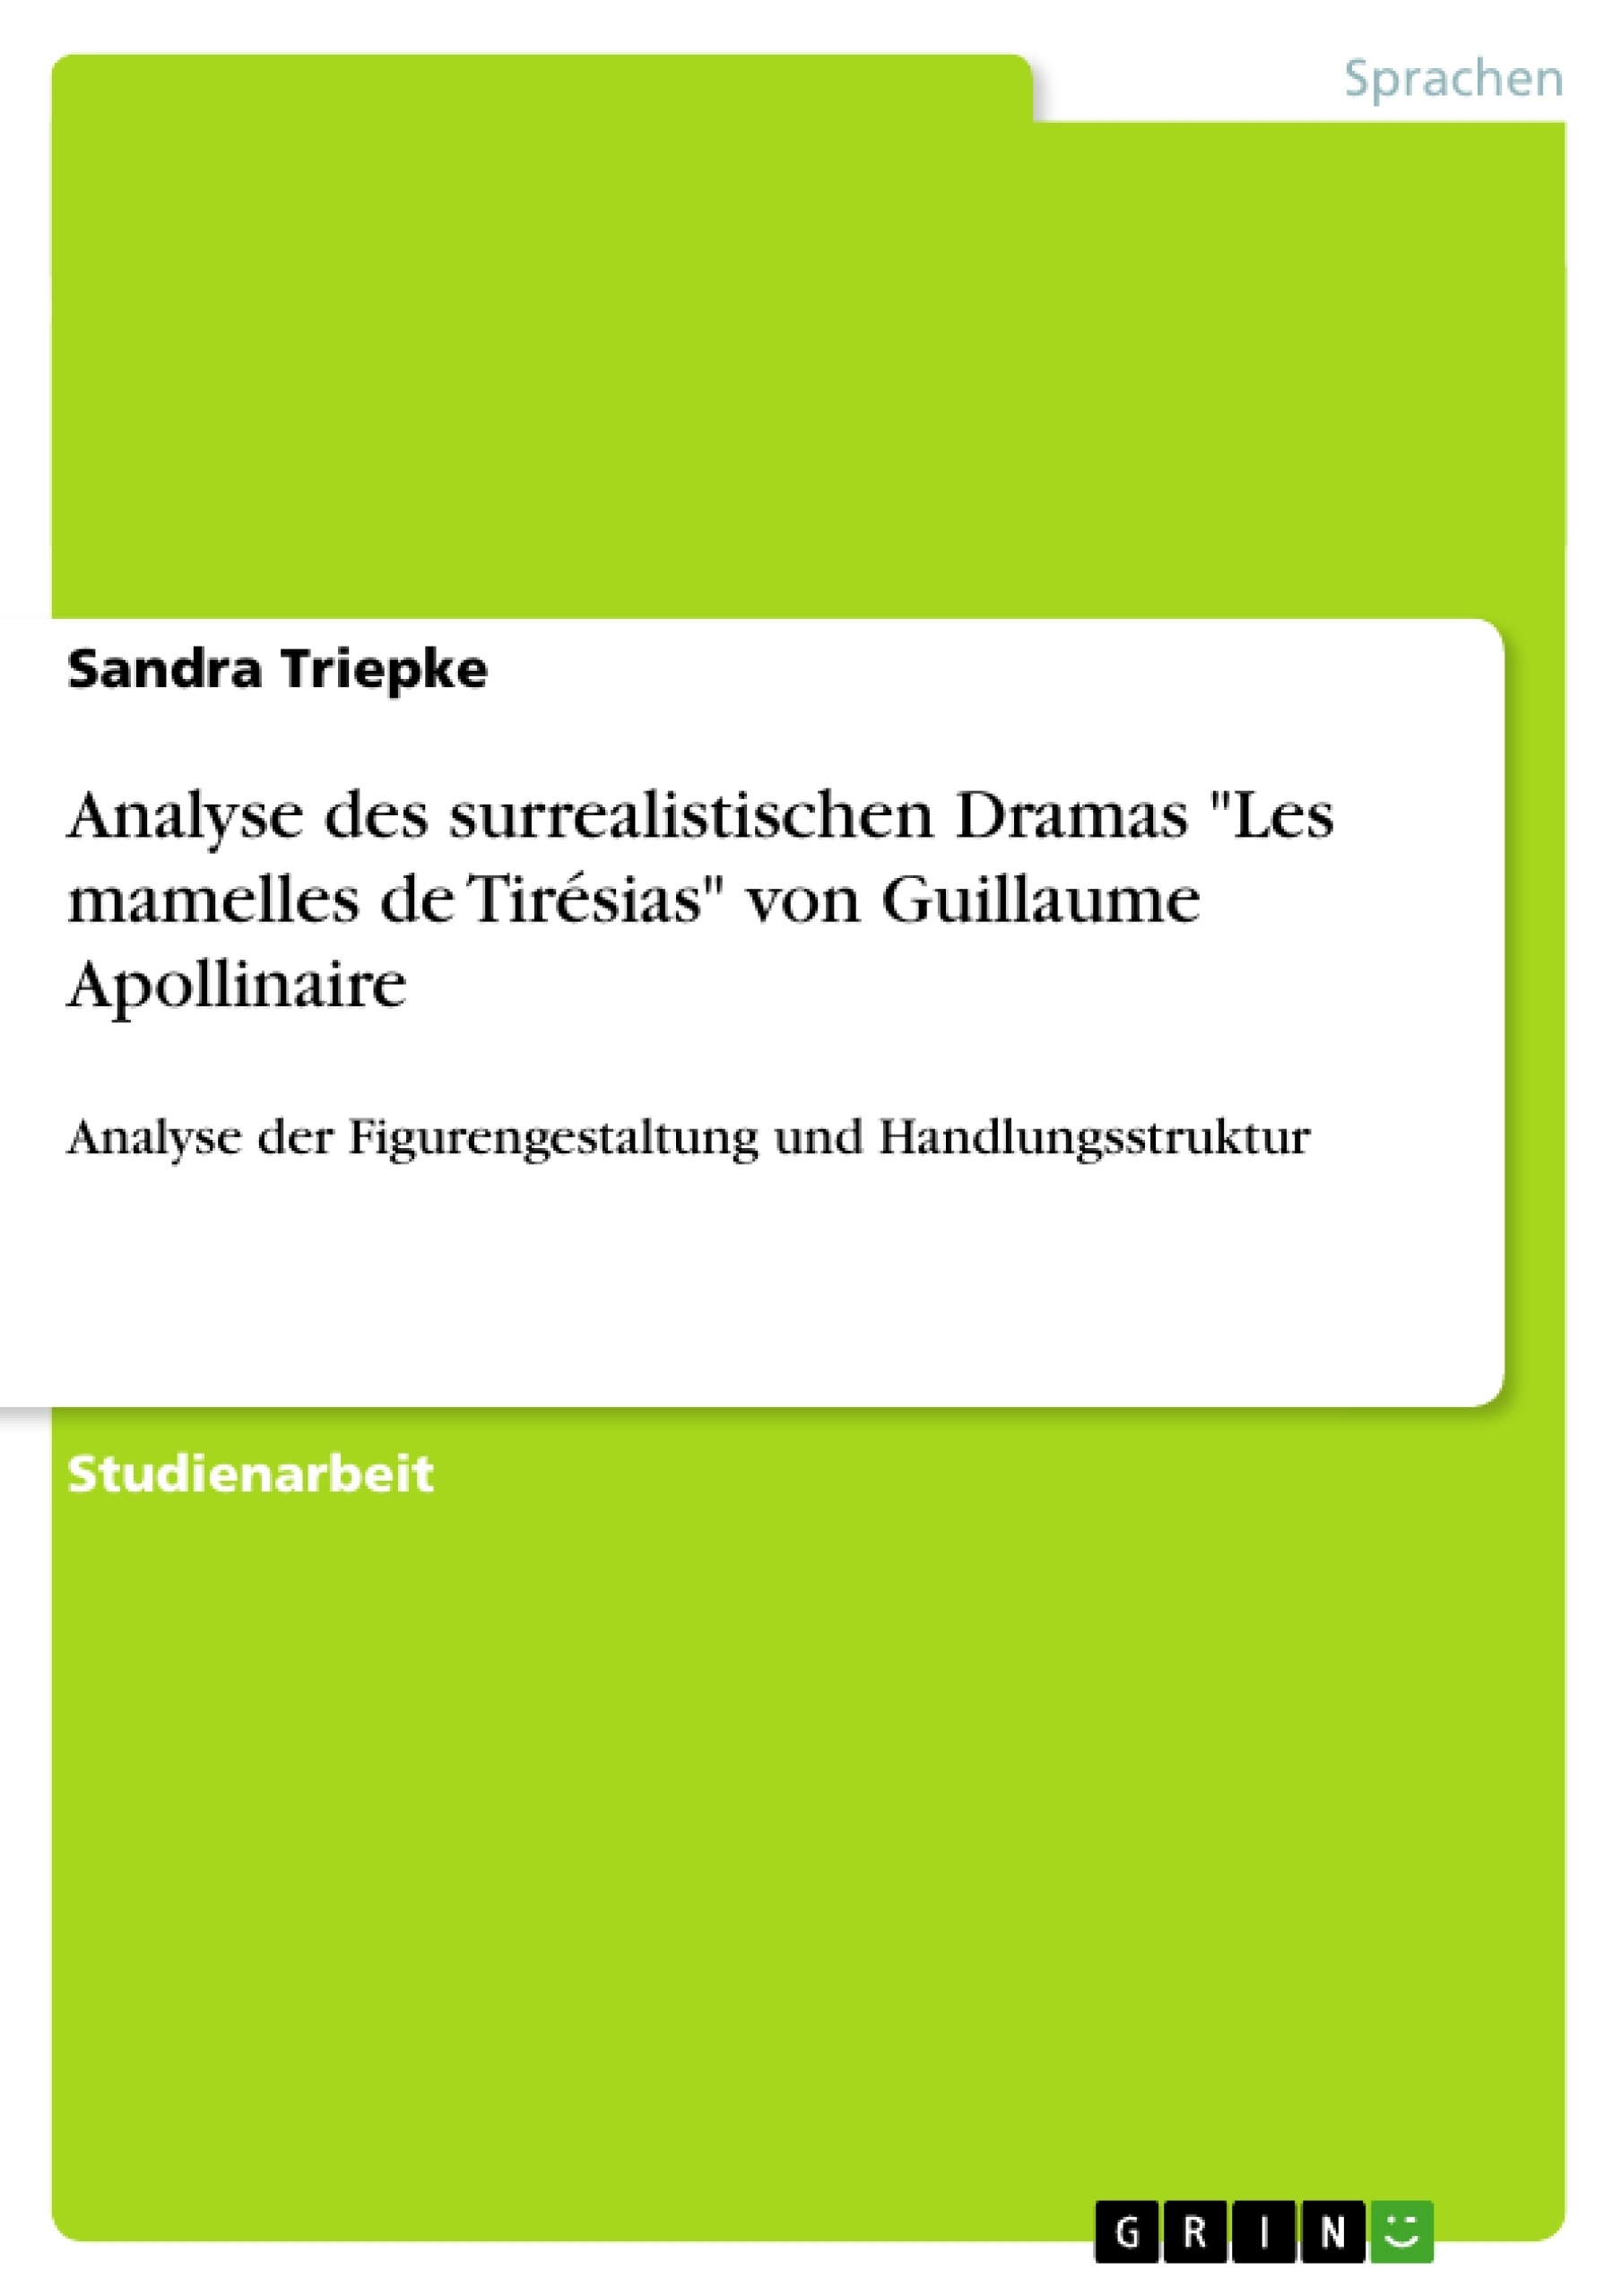 Titel: Analyse des surrealistischen Dramas "Les mamelles de Tirésias" von Guillaume Apollinaire 